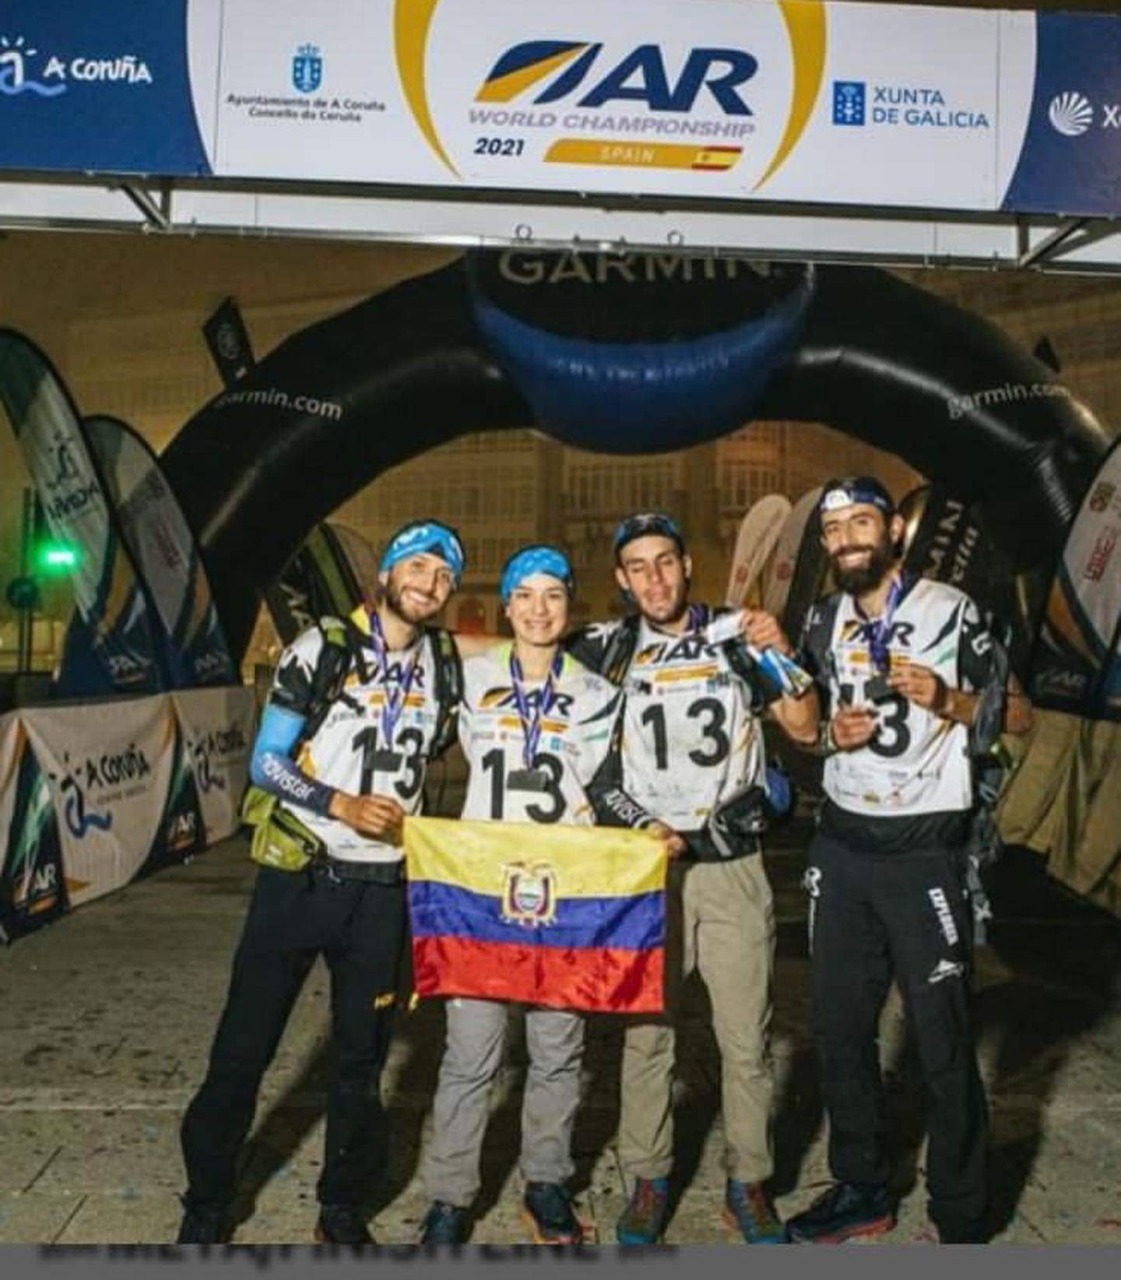 Movistar team, el tercer mejor equipo latinoamericano del Mundial de aventura